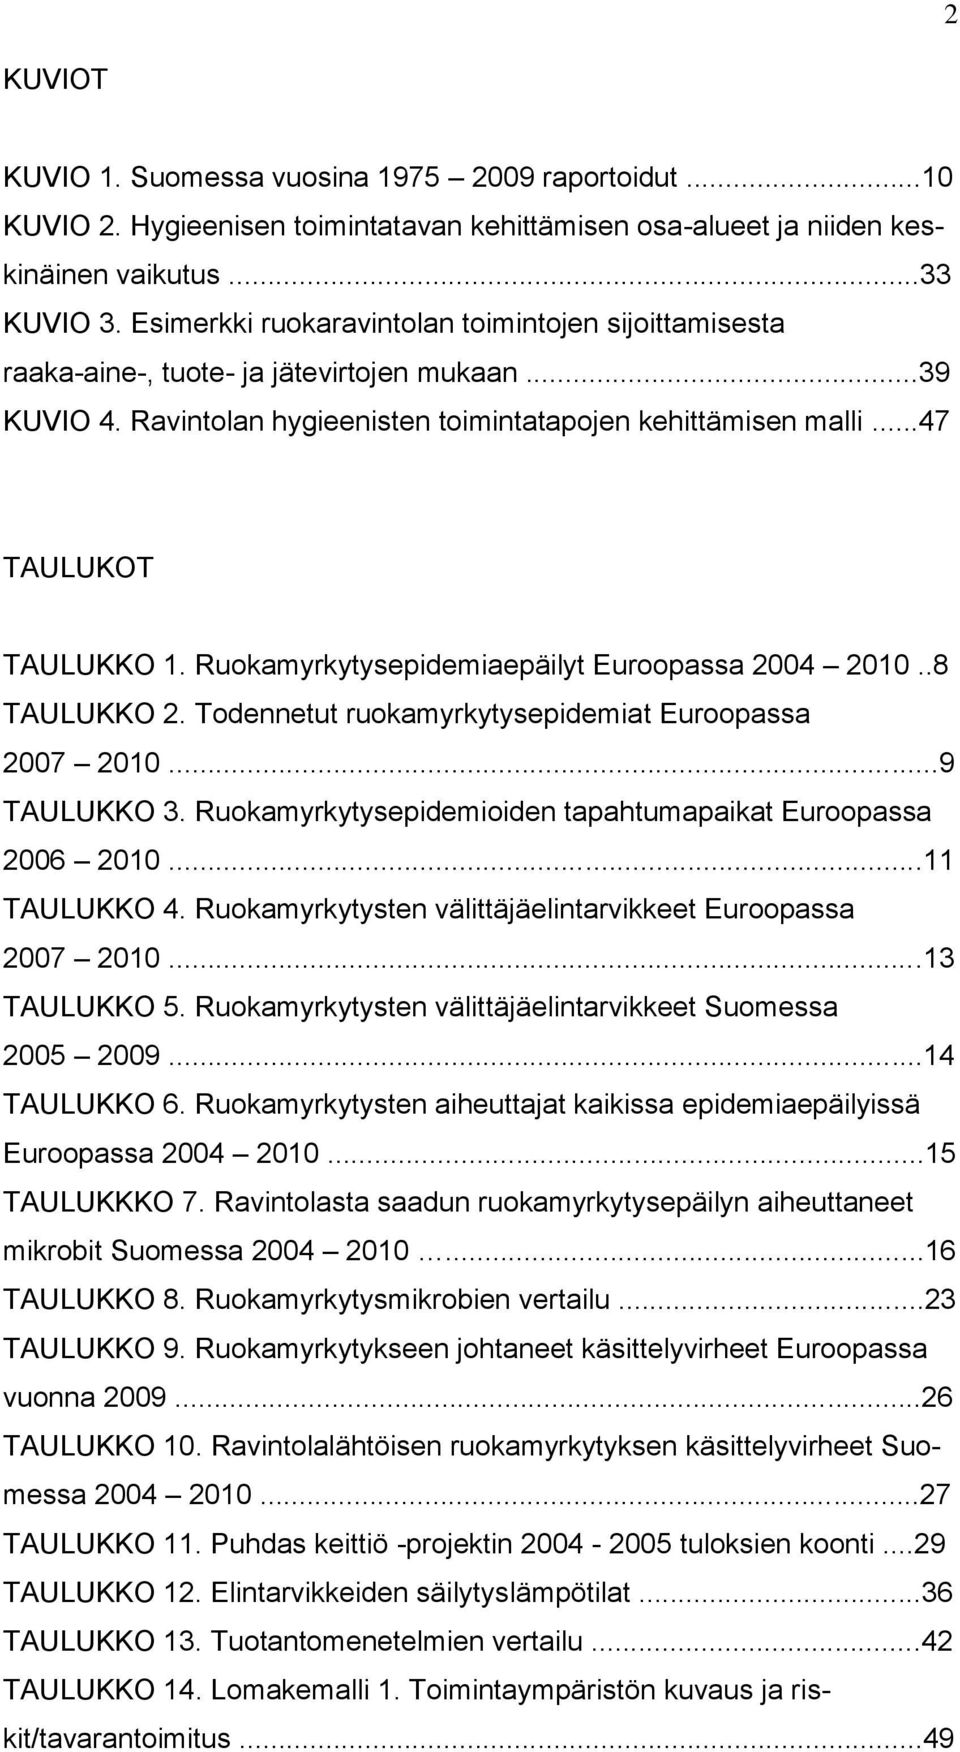 Ruokamyrkytysepidemiaepäilyt Euroopassa 2004 2010..8 TAULUKKO 2. Todennetut ruokamyrkytysepidemiat Euroopassa 2007 2010...9 TAULUKKO 3. Ruokamyrkytysepidemioiden tapahtumapaikat Euroopassa 2006 2010.